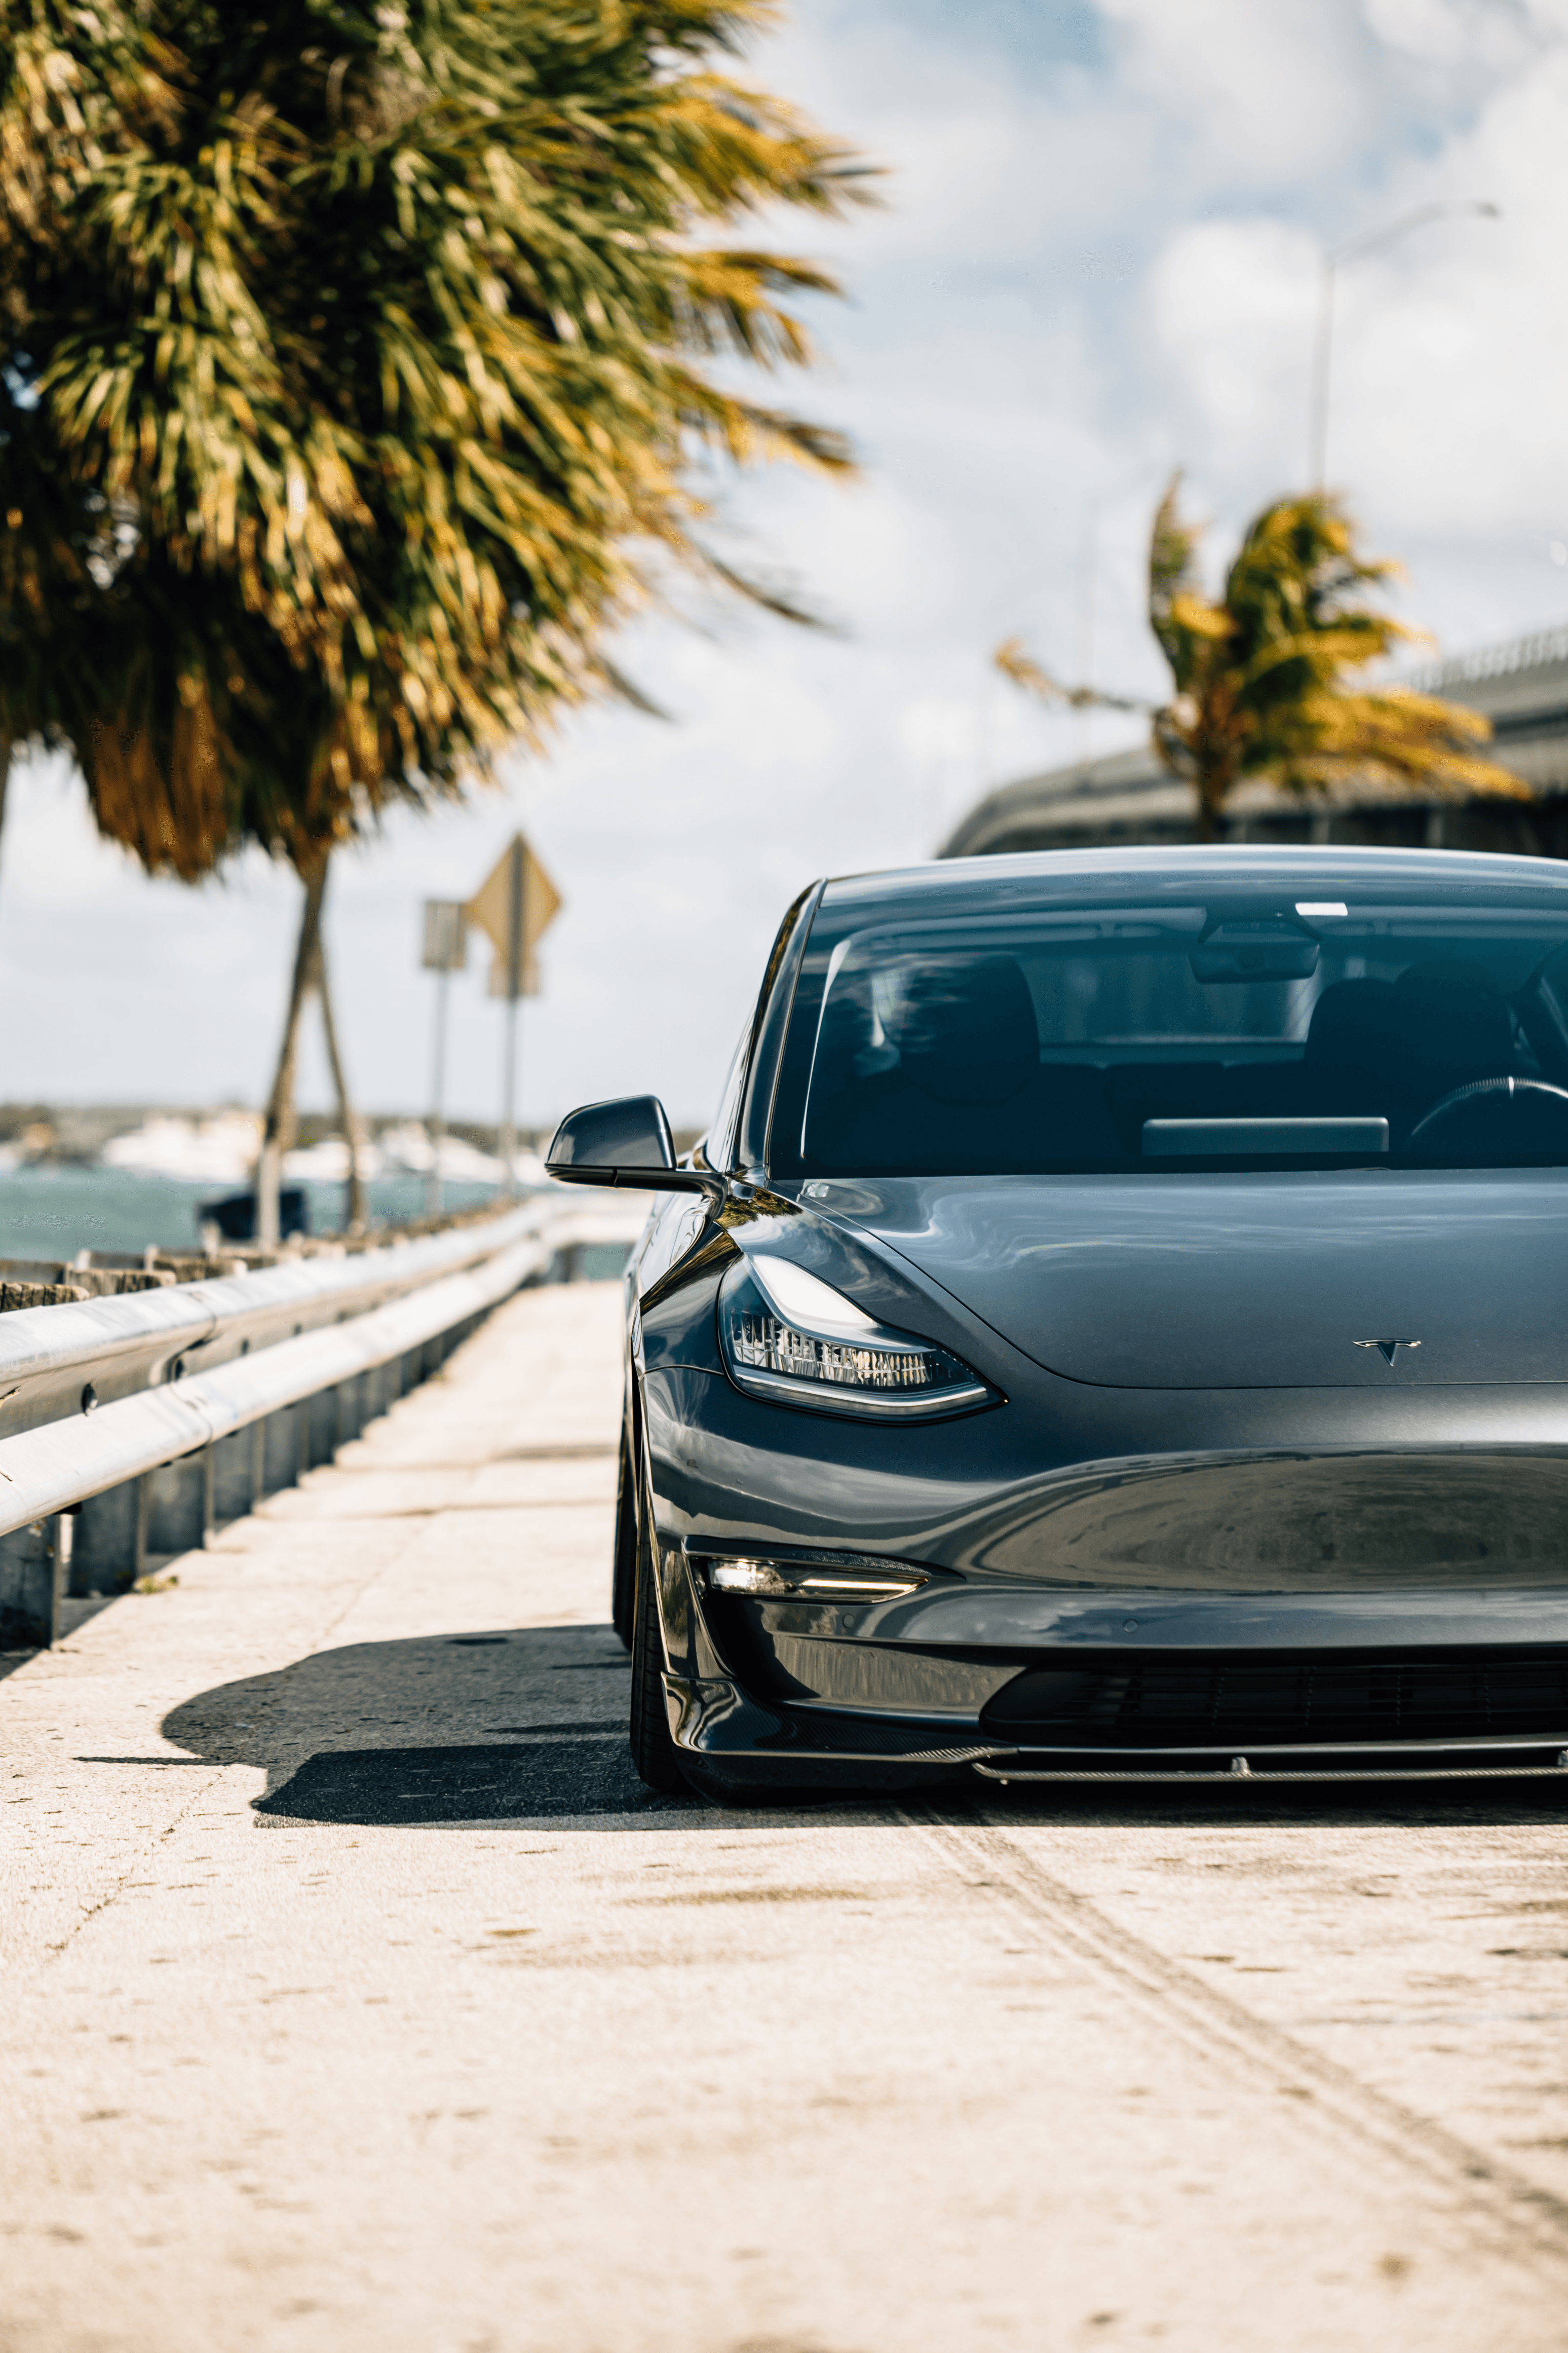 Carbon Fiber Lips "C" style for Tesla Model 3